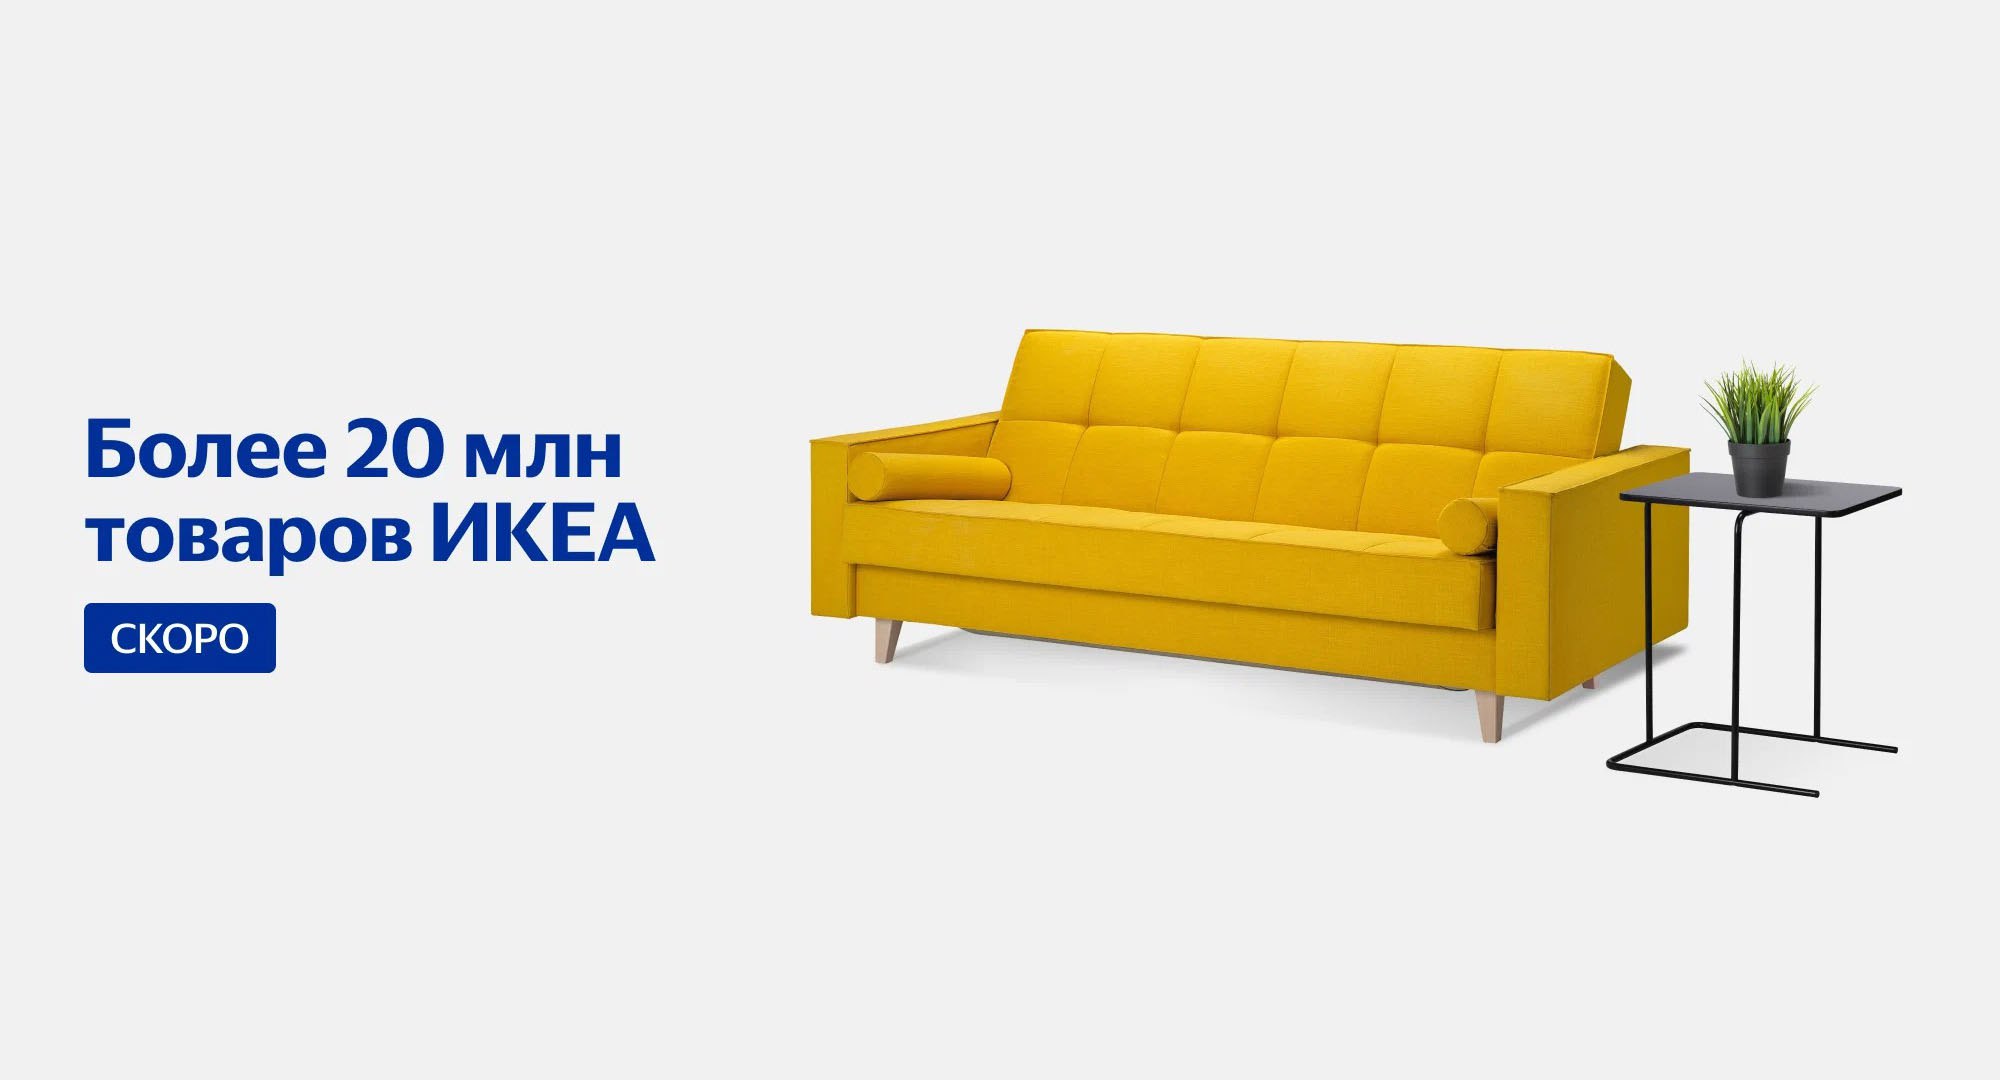 Доставка мебели икеа в россию